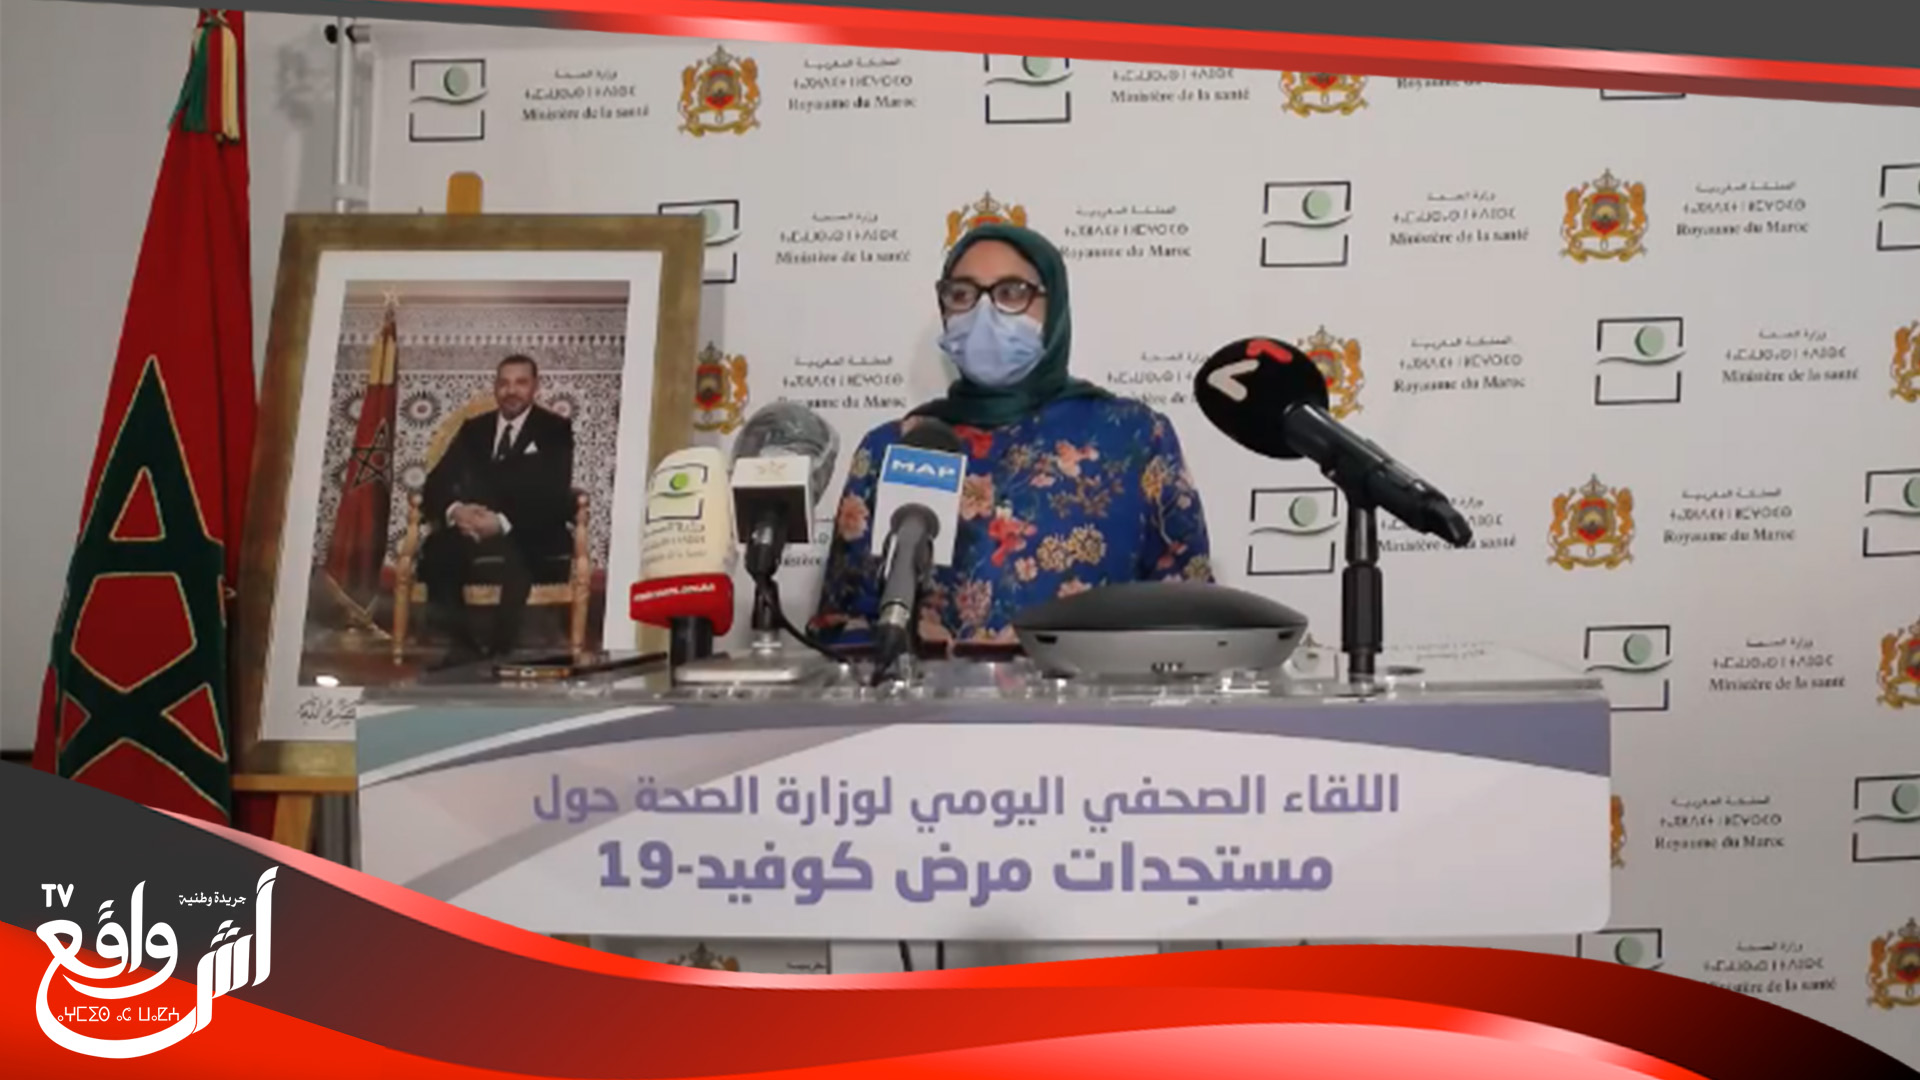 المغرب يرصد زيادة لافتة في عدد الإصابات بـ”كورونا” و تسجل ارتفاع حالات التعافي خلال 24 ساعة